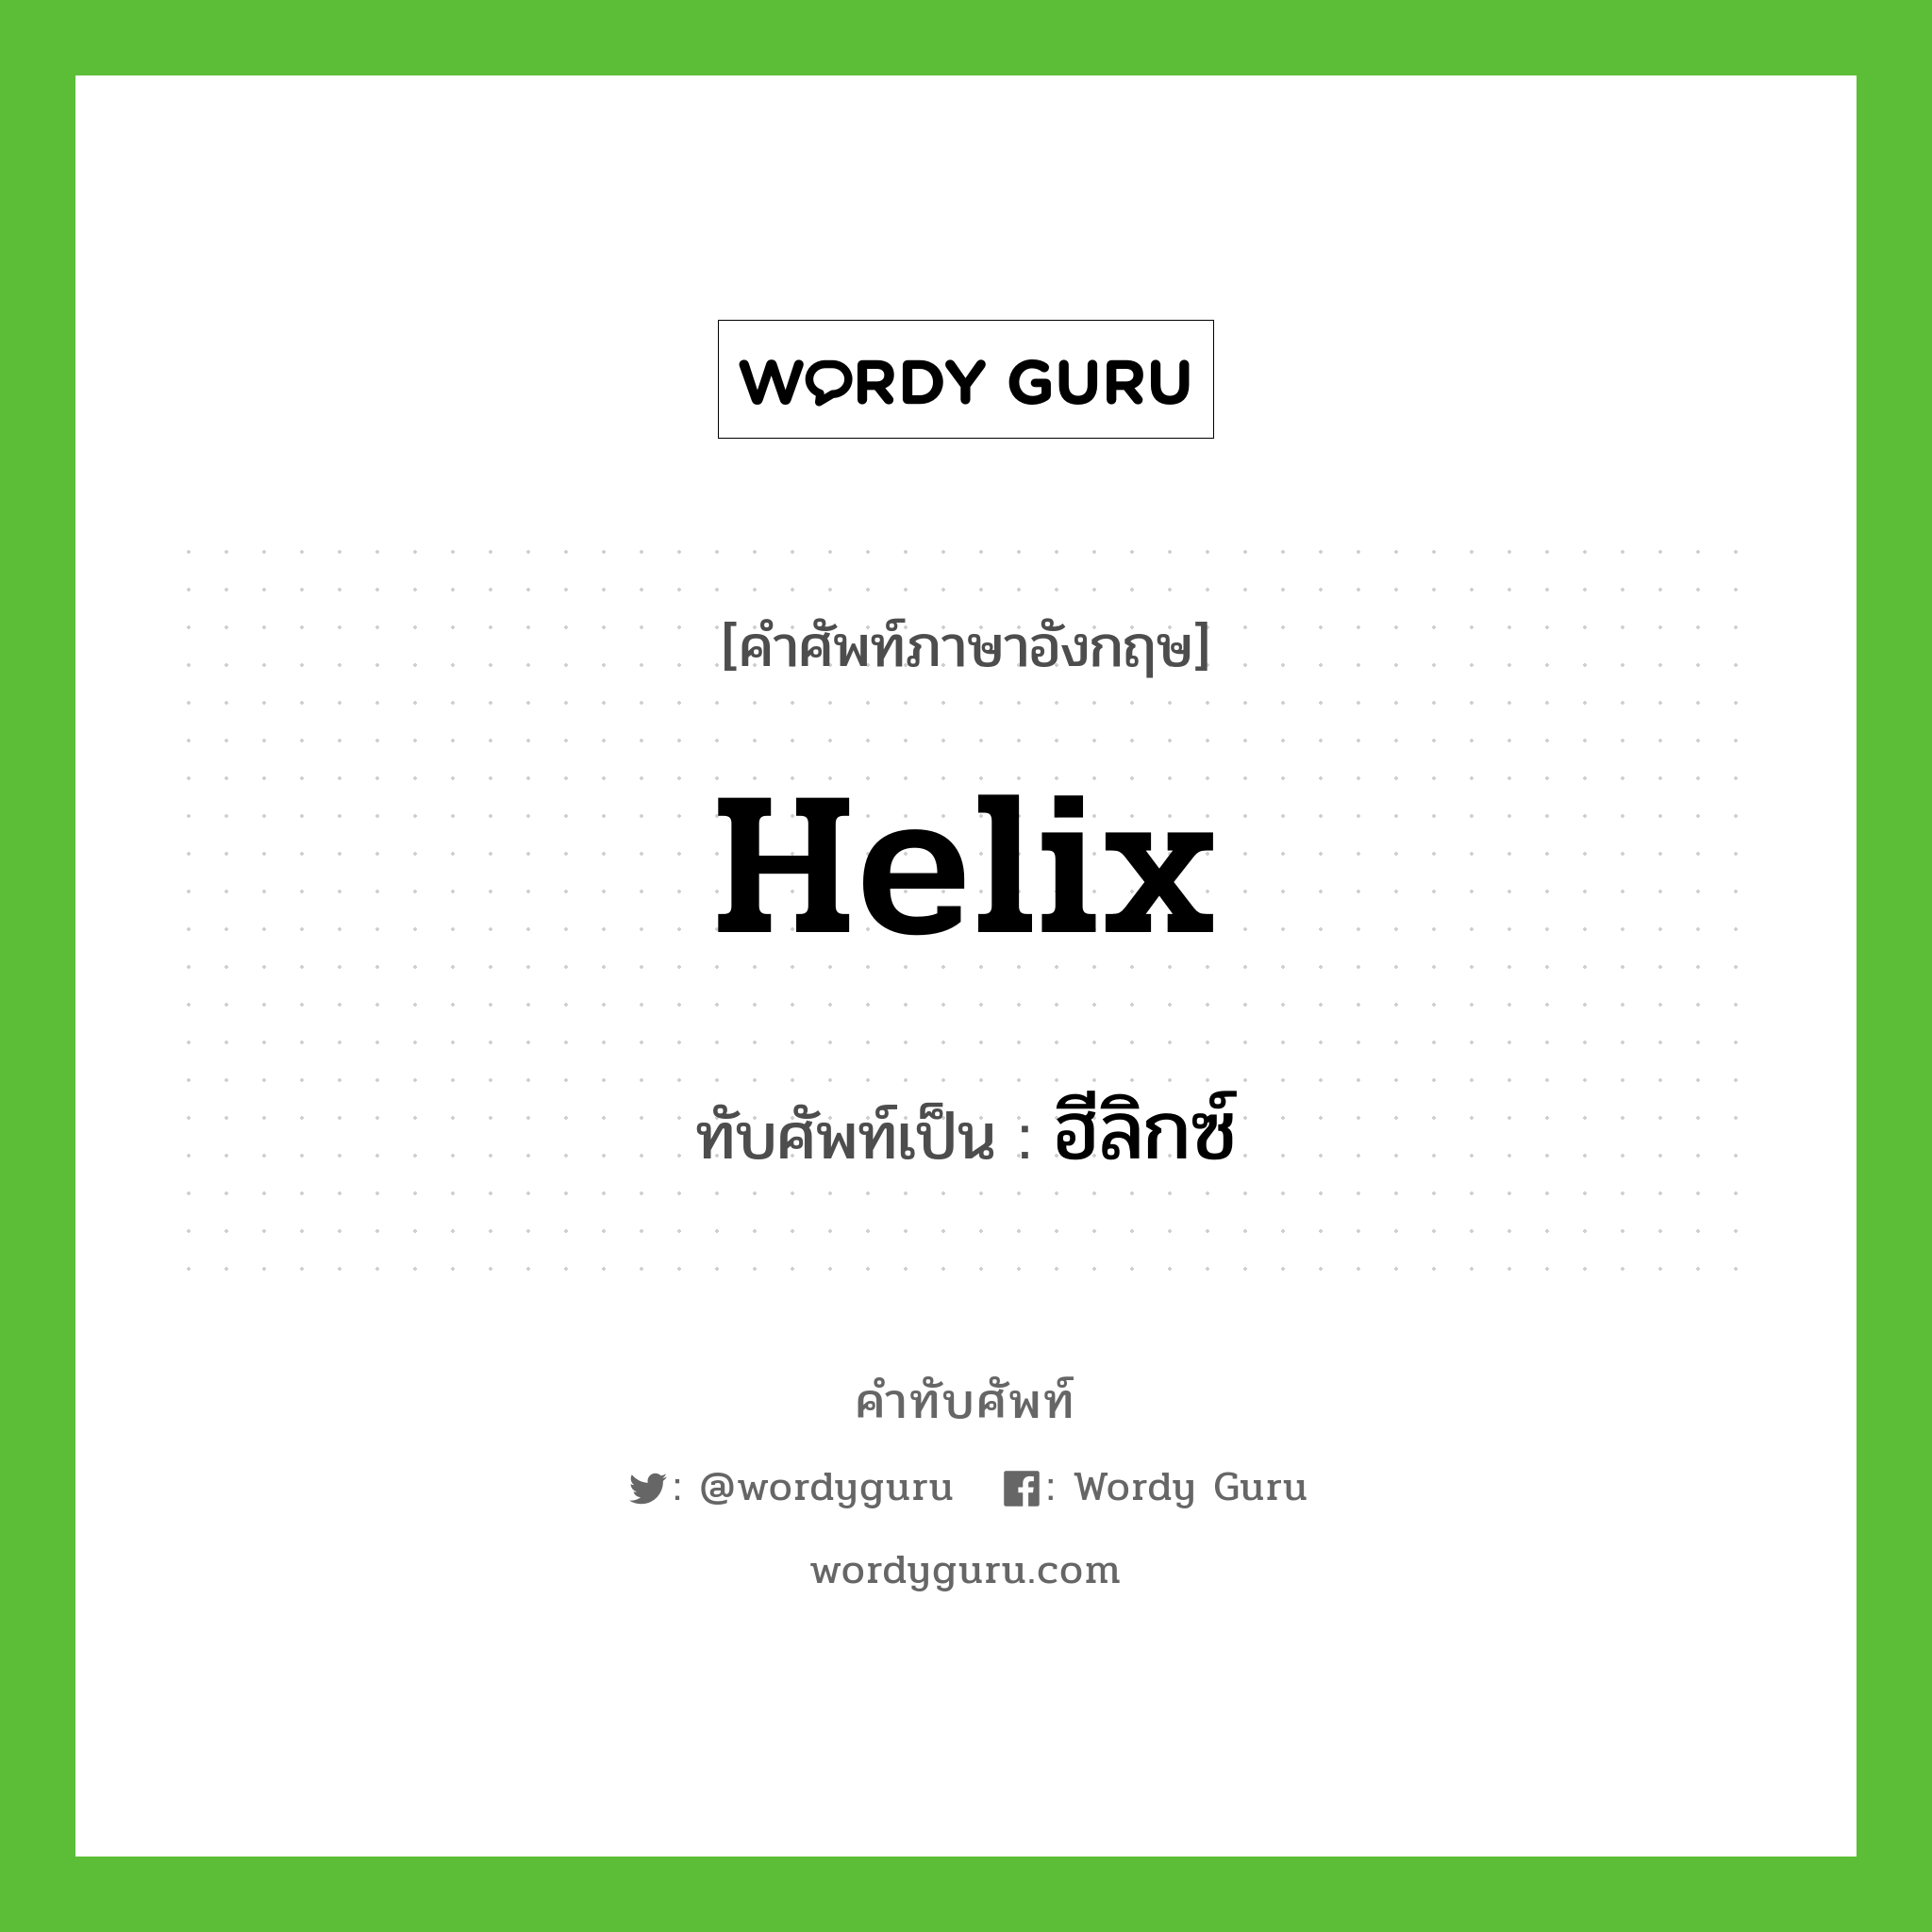 helix เขียนเป็นคำไทยว่าอะไร?, คำศัพท์ภาษาอังกฤษ helix ทับศัพท์เป็น ฮีลิกซ์